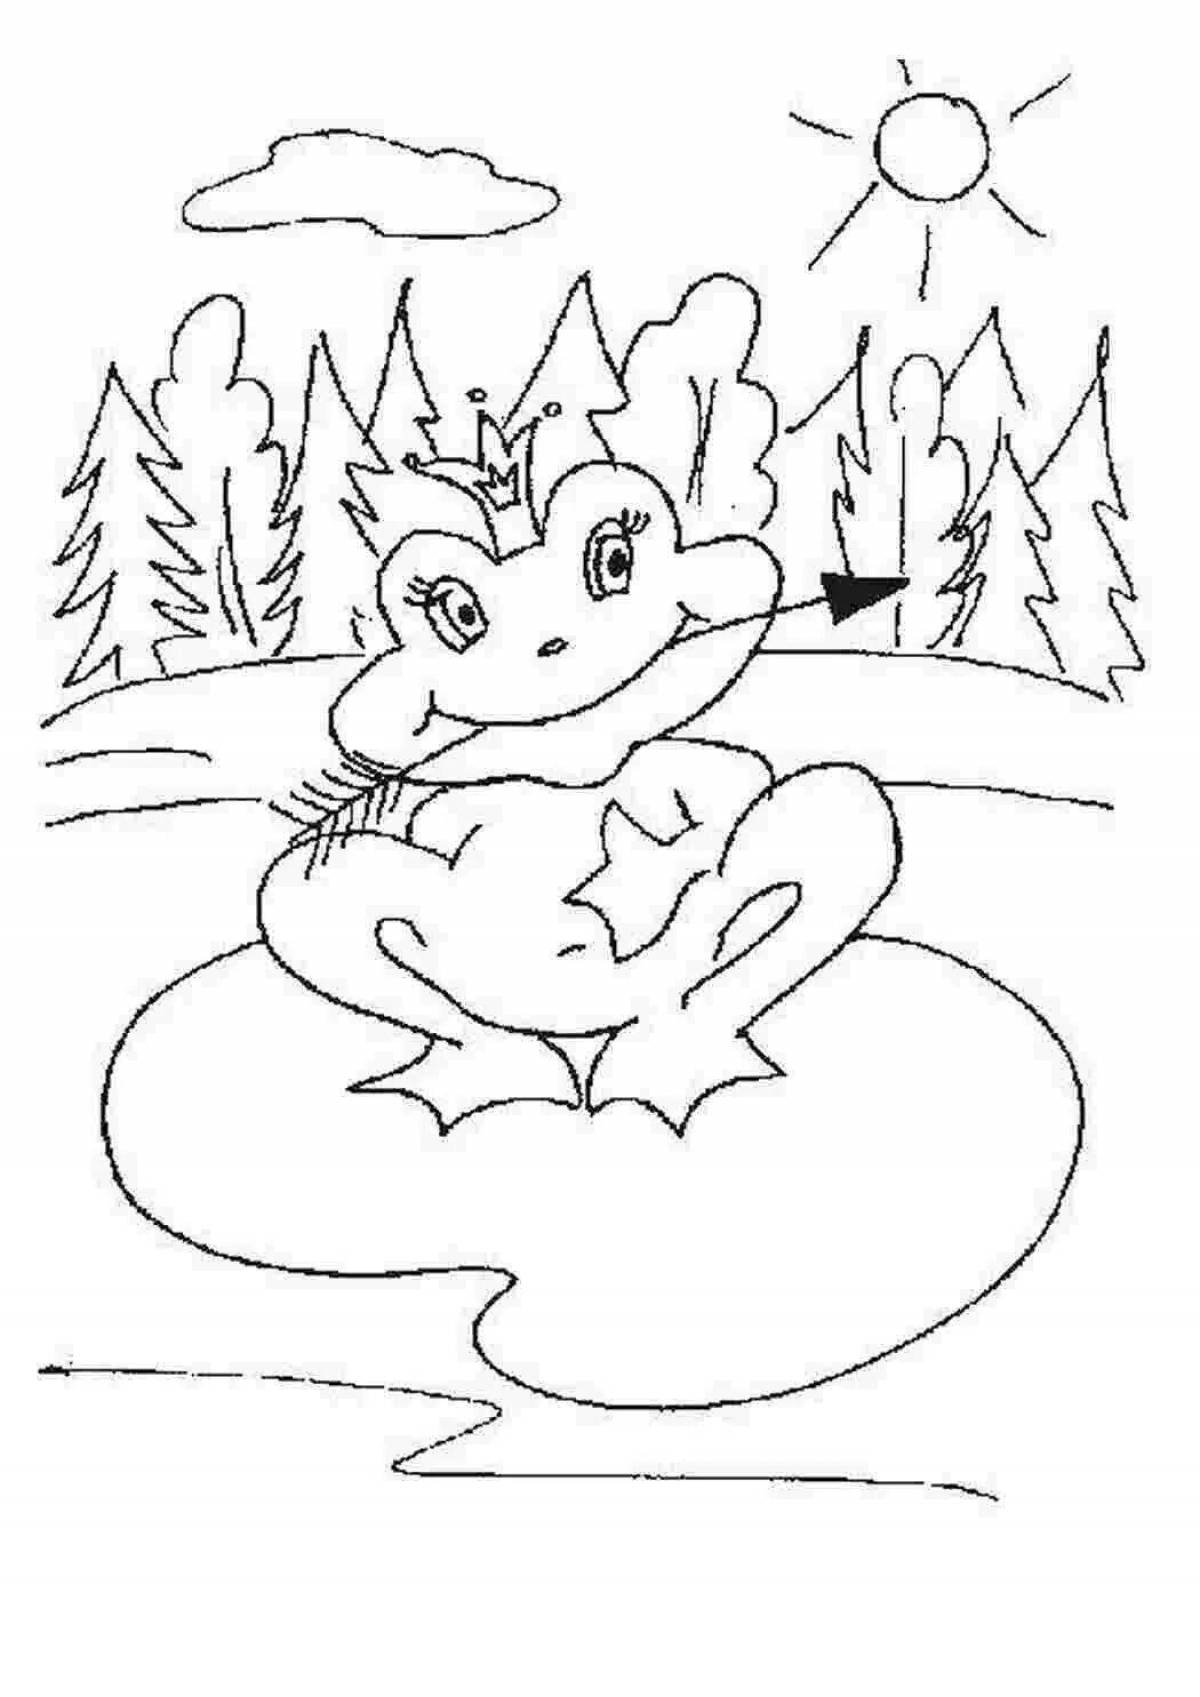 Иллюстрации к сказкам раскраски. Царевна-лягушка сказка раскраска для детей. Раскраска. Царевна-лягушка. Раскраска царевналягущка. Раскраска к сказке Царевна лягушка.